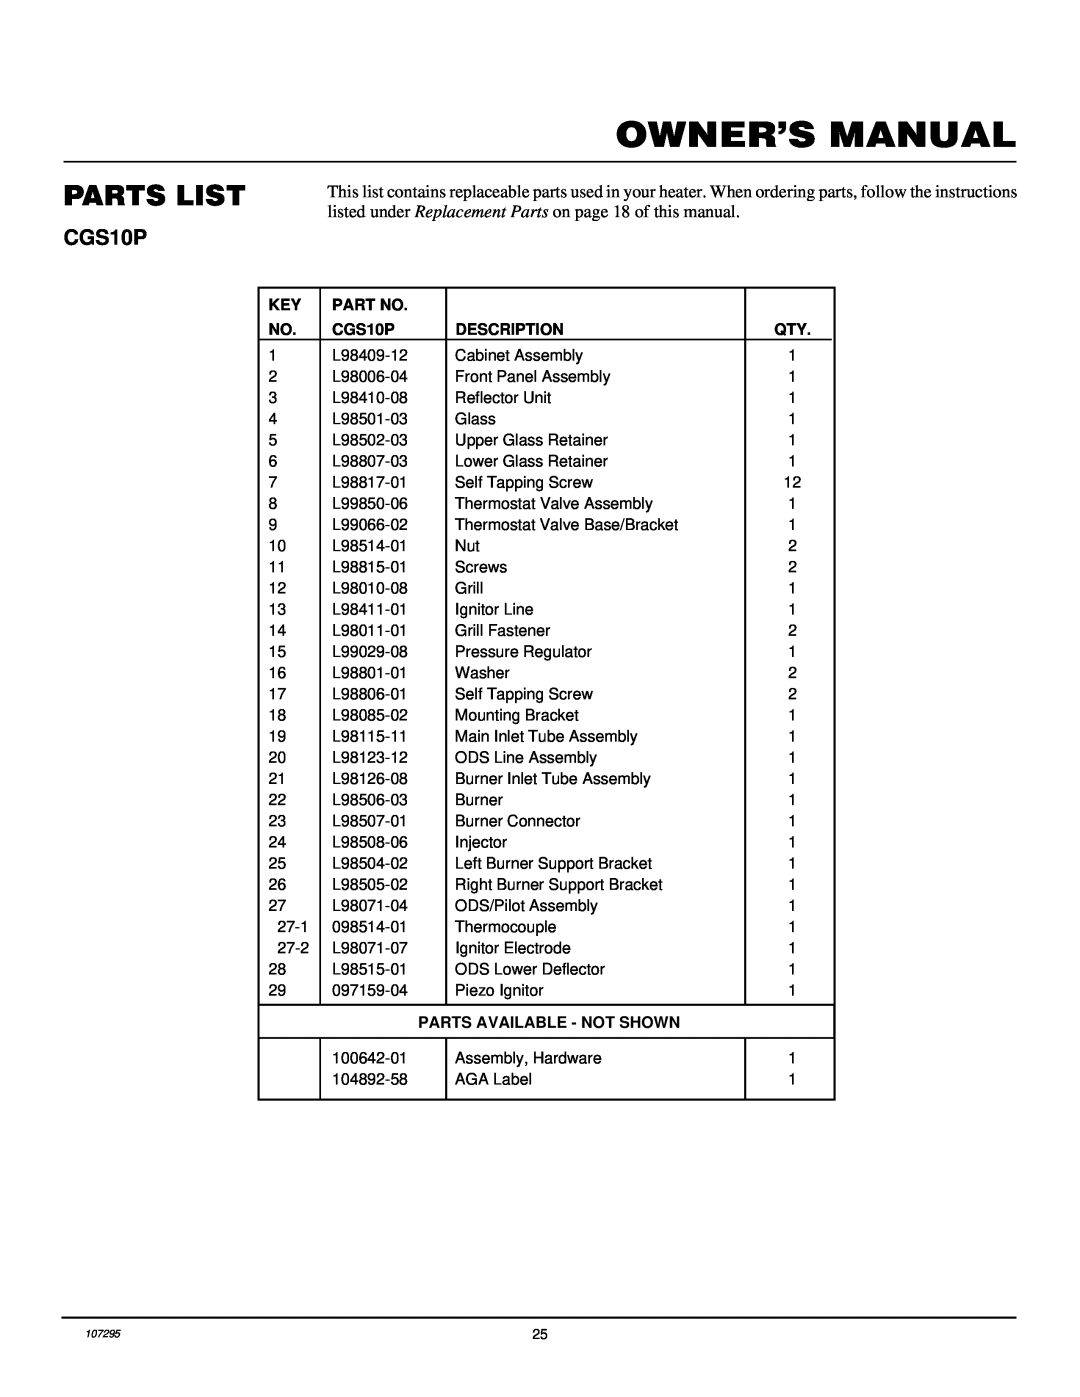 Desa CG6P, CG10P installation manual Parts List, CGS10P, Description, Parts Available - Not Shown 